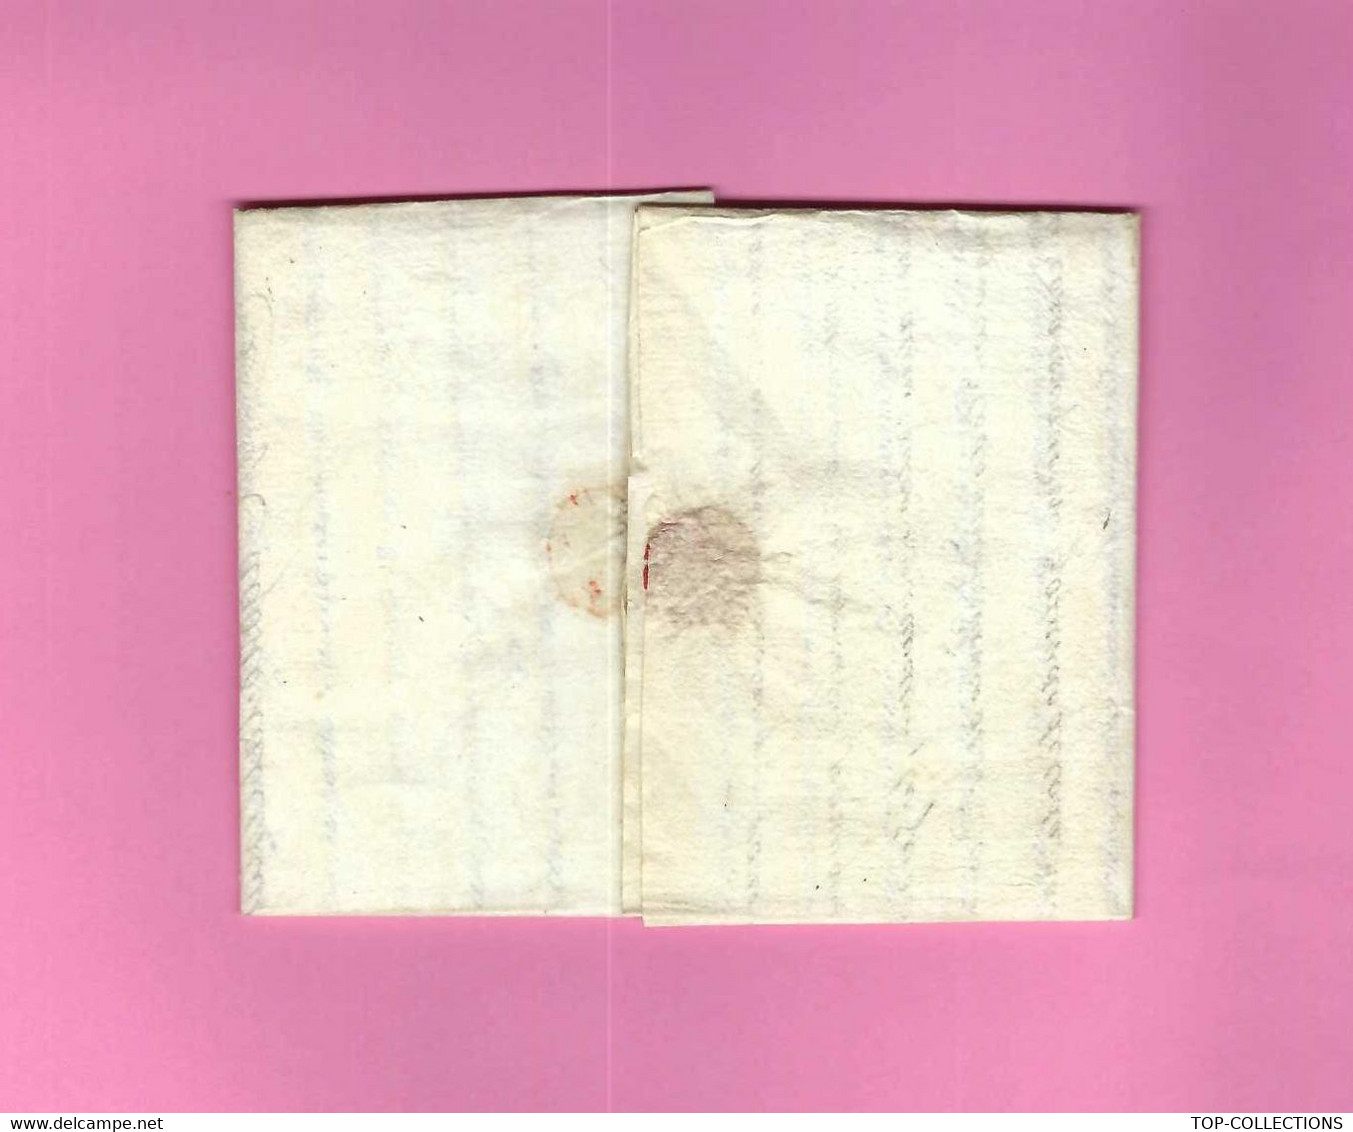 1743 Judaïca  lettre St Malo 1747 sign. par Magon de la Blinaye => Gabriel  de Sylva  à Bordeaux BANQUE NEGOCE CORSAIRES